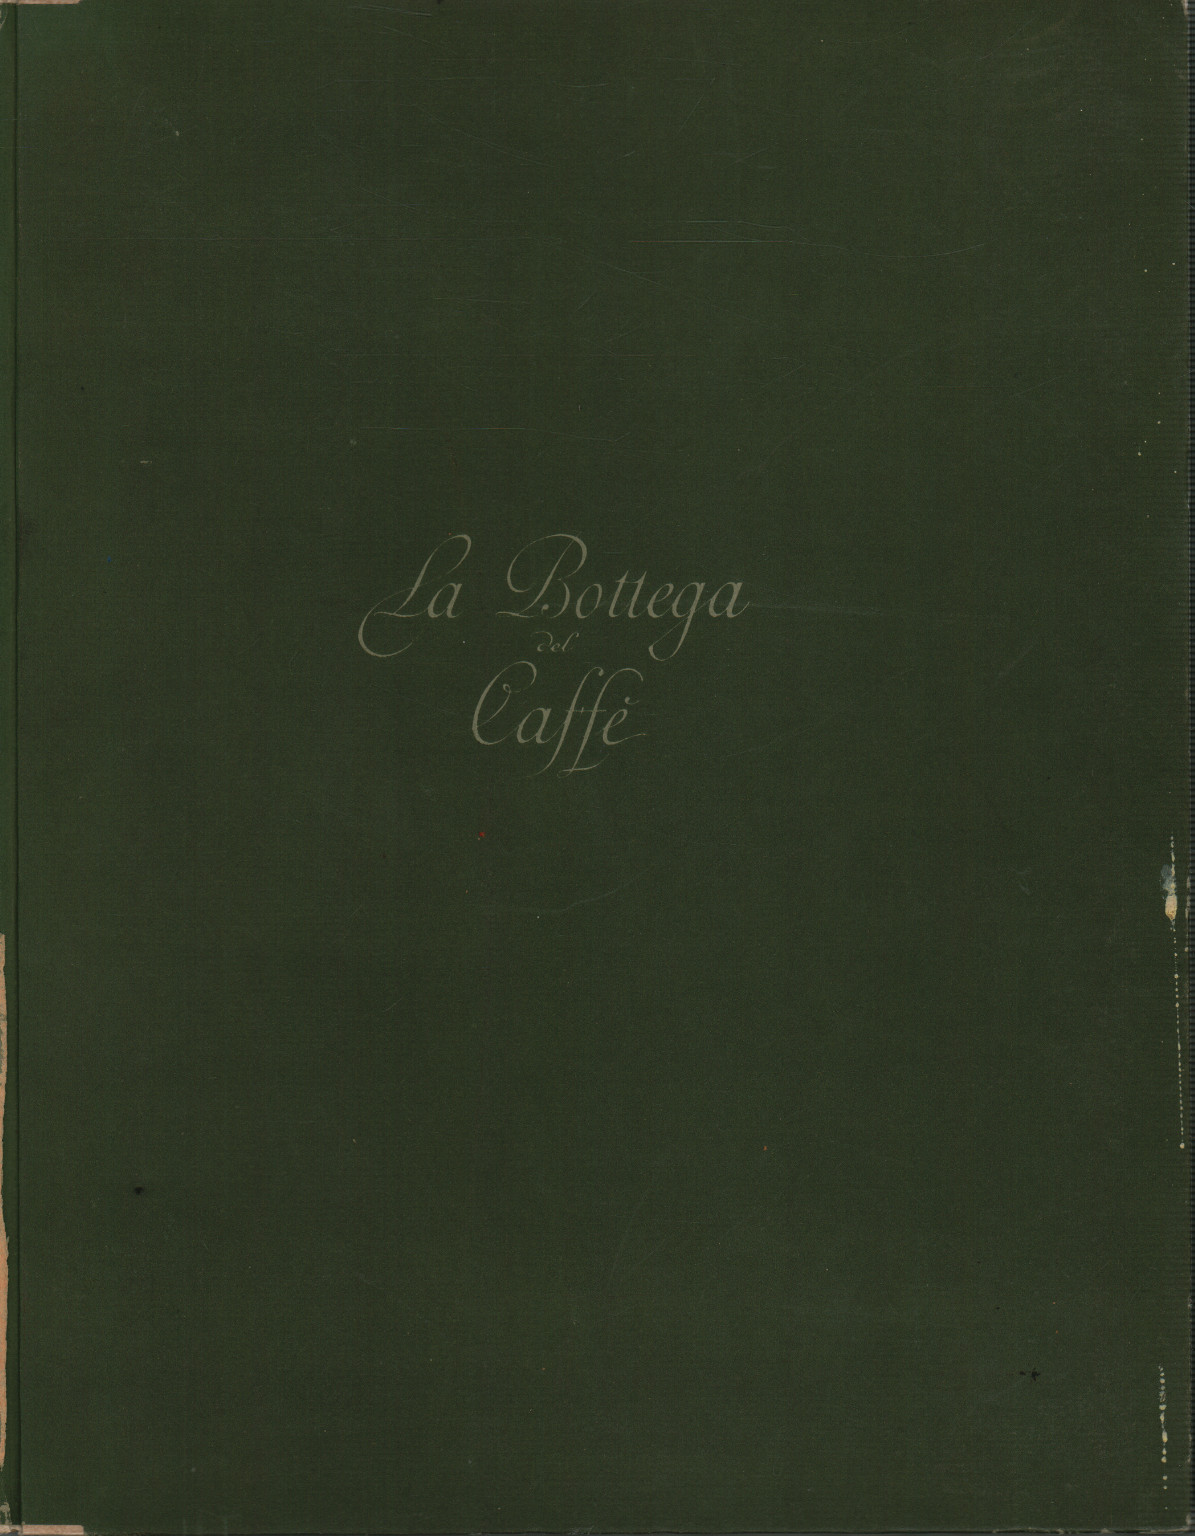 La Tienda de Café, s.una.